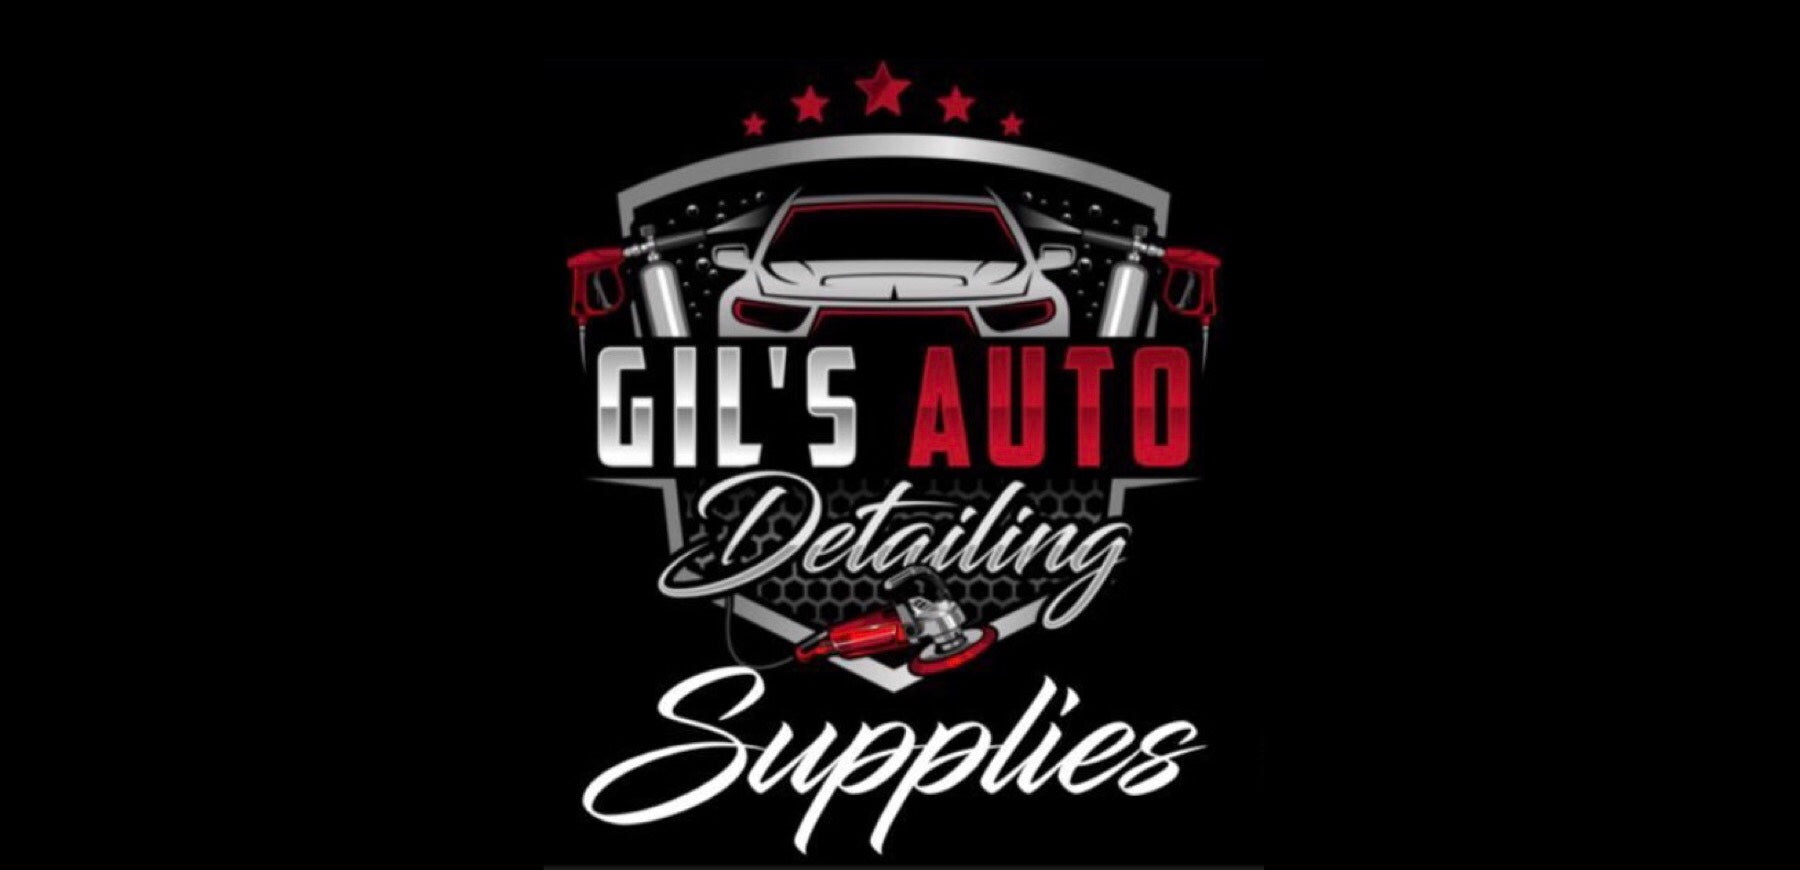 Gil's Auto Detailing Supplies LLC